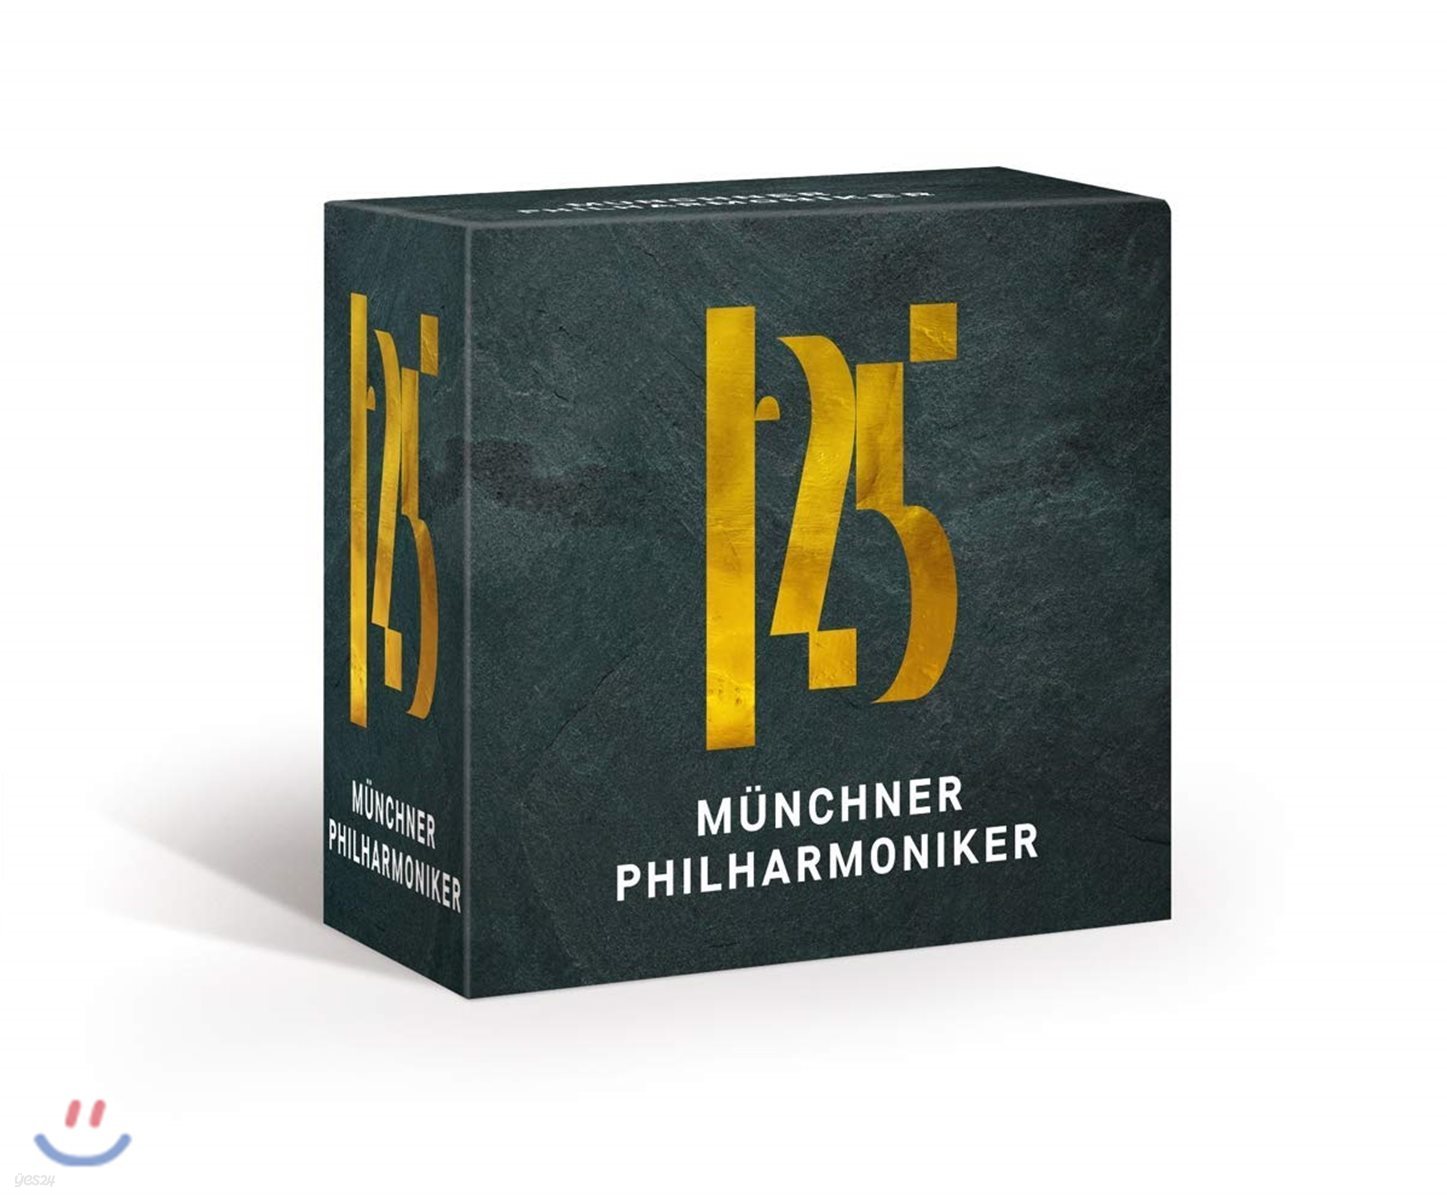 뮌헨필 125주년 기념 특별한정반 박스 세트 (125 Years Munchner Philharmoniker Boxset)